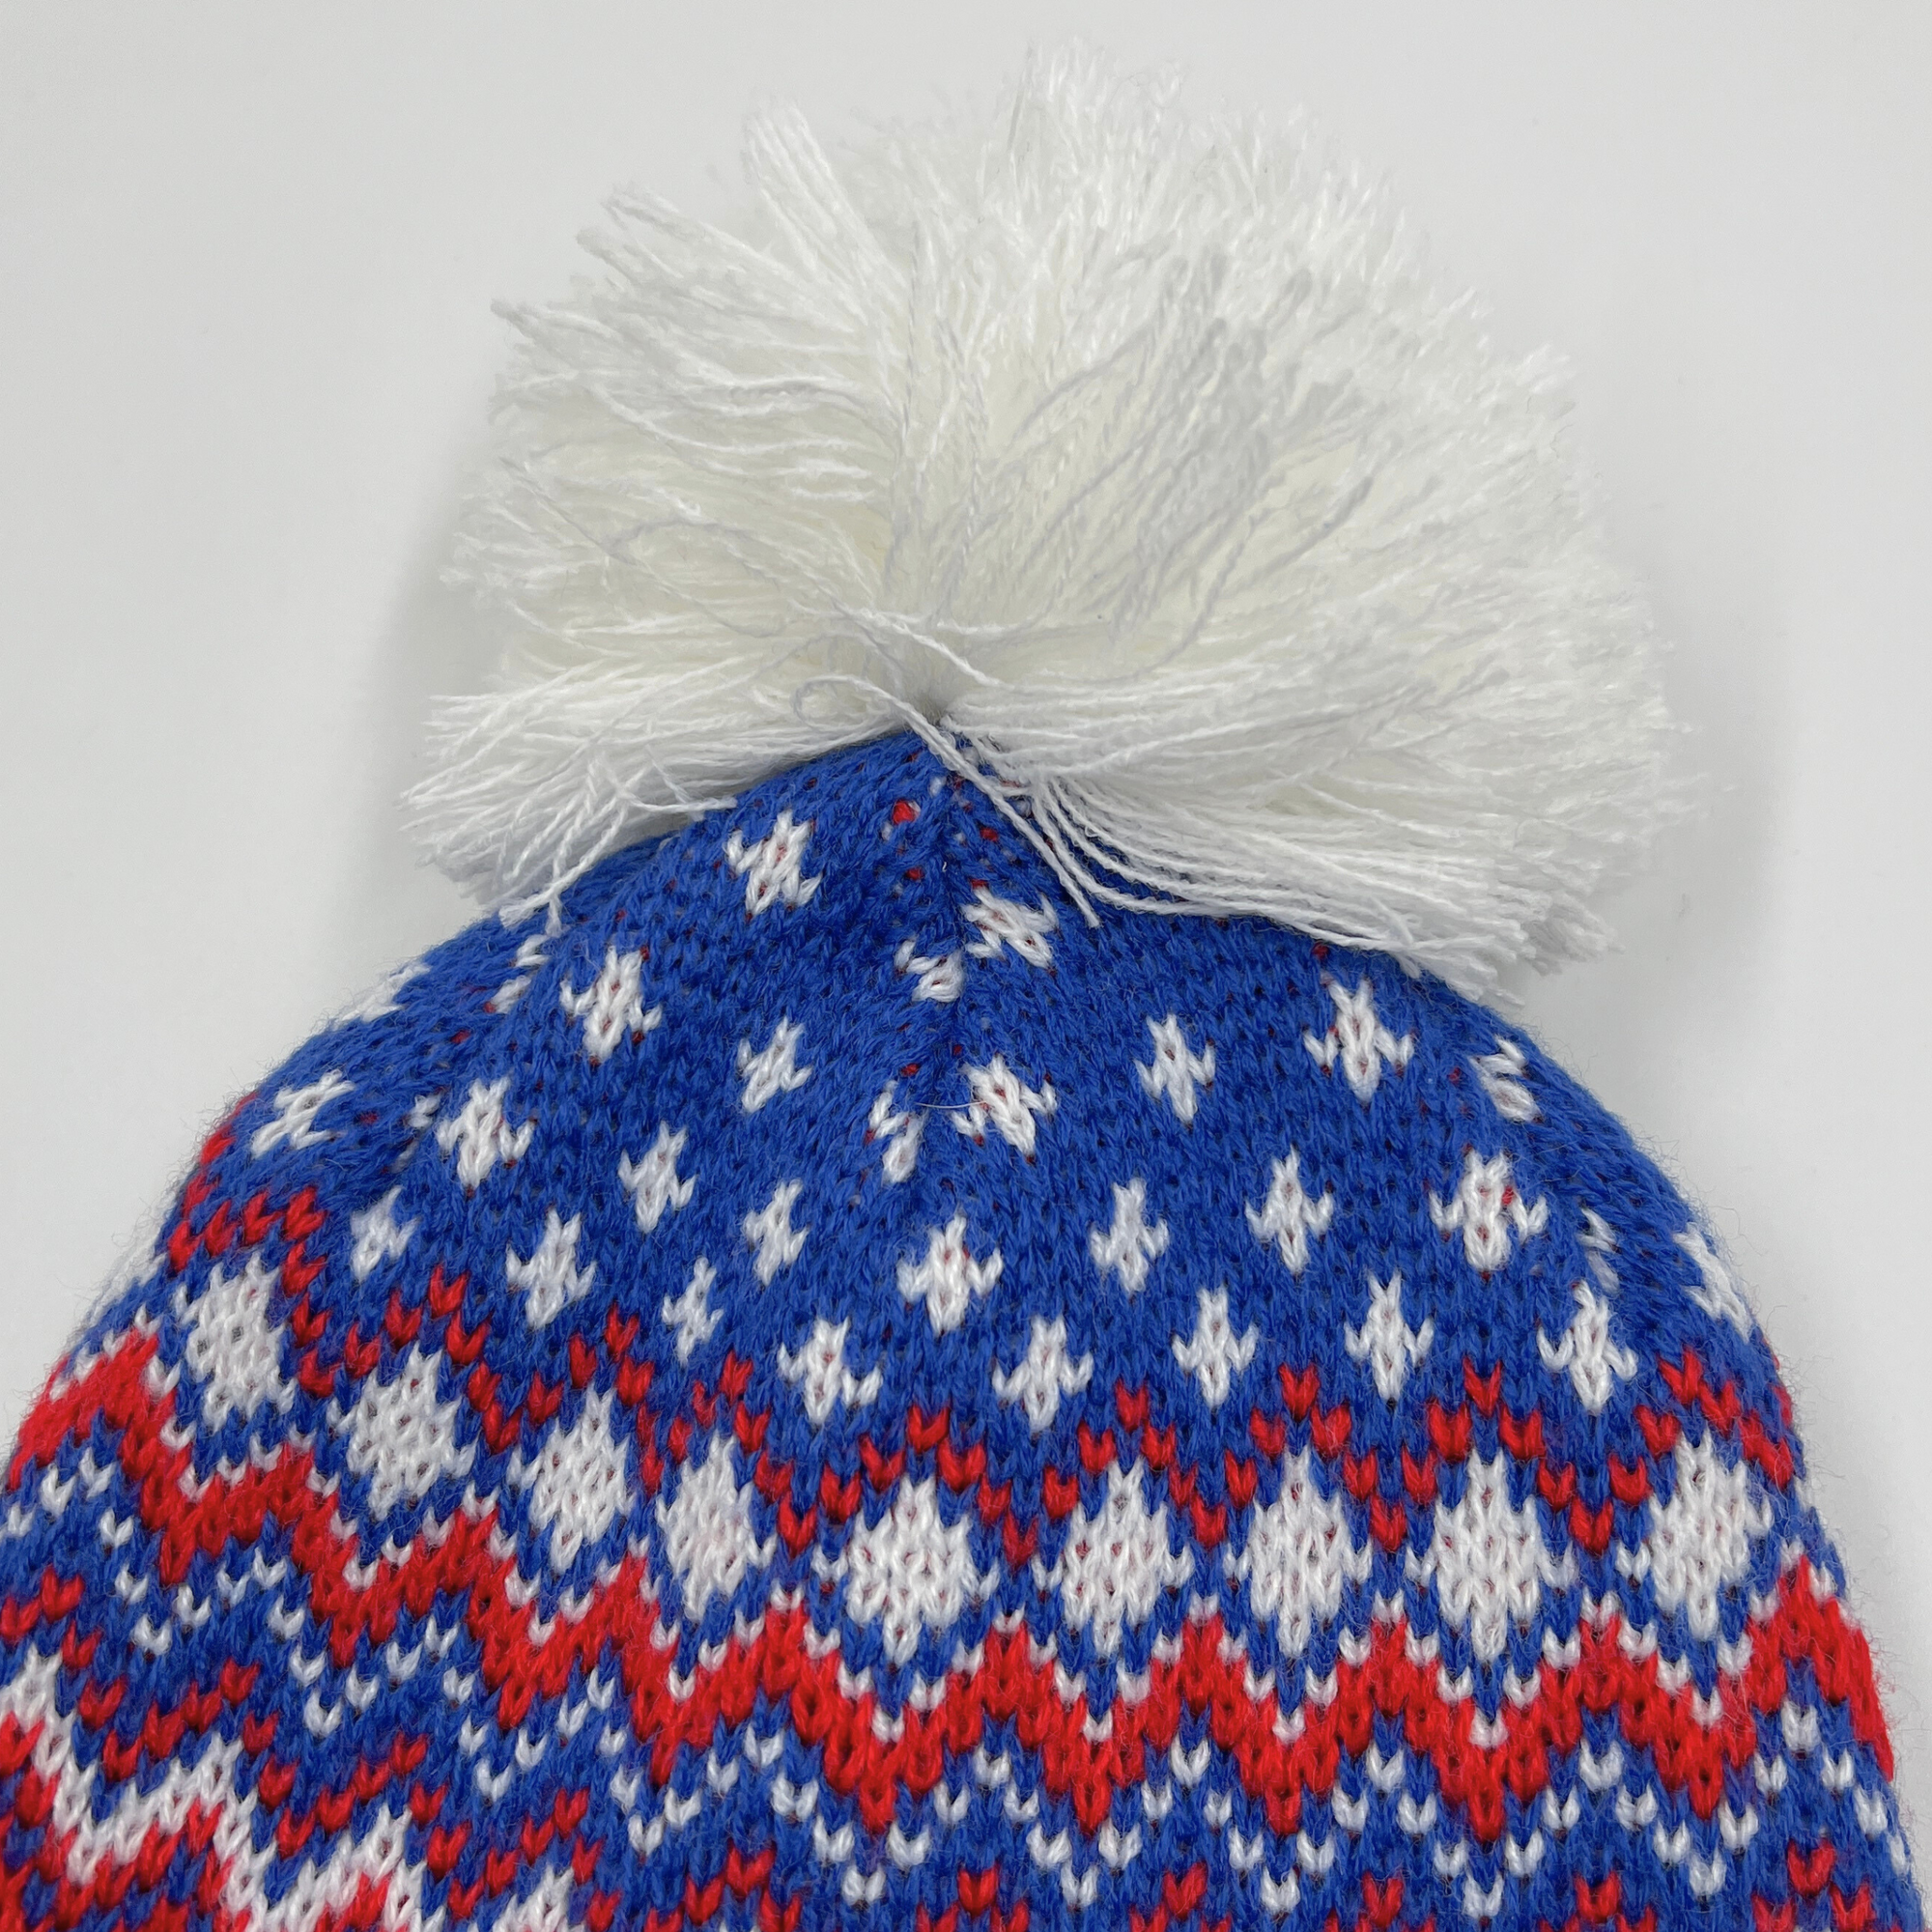 Women&#39;s &#39;47 Brand Buffalo Bills Sonic Blue With Pattern Knit Winter Hat